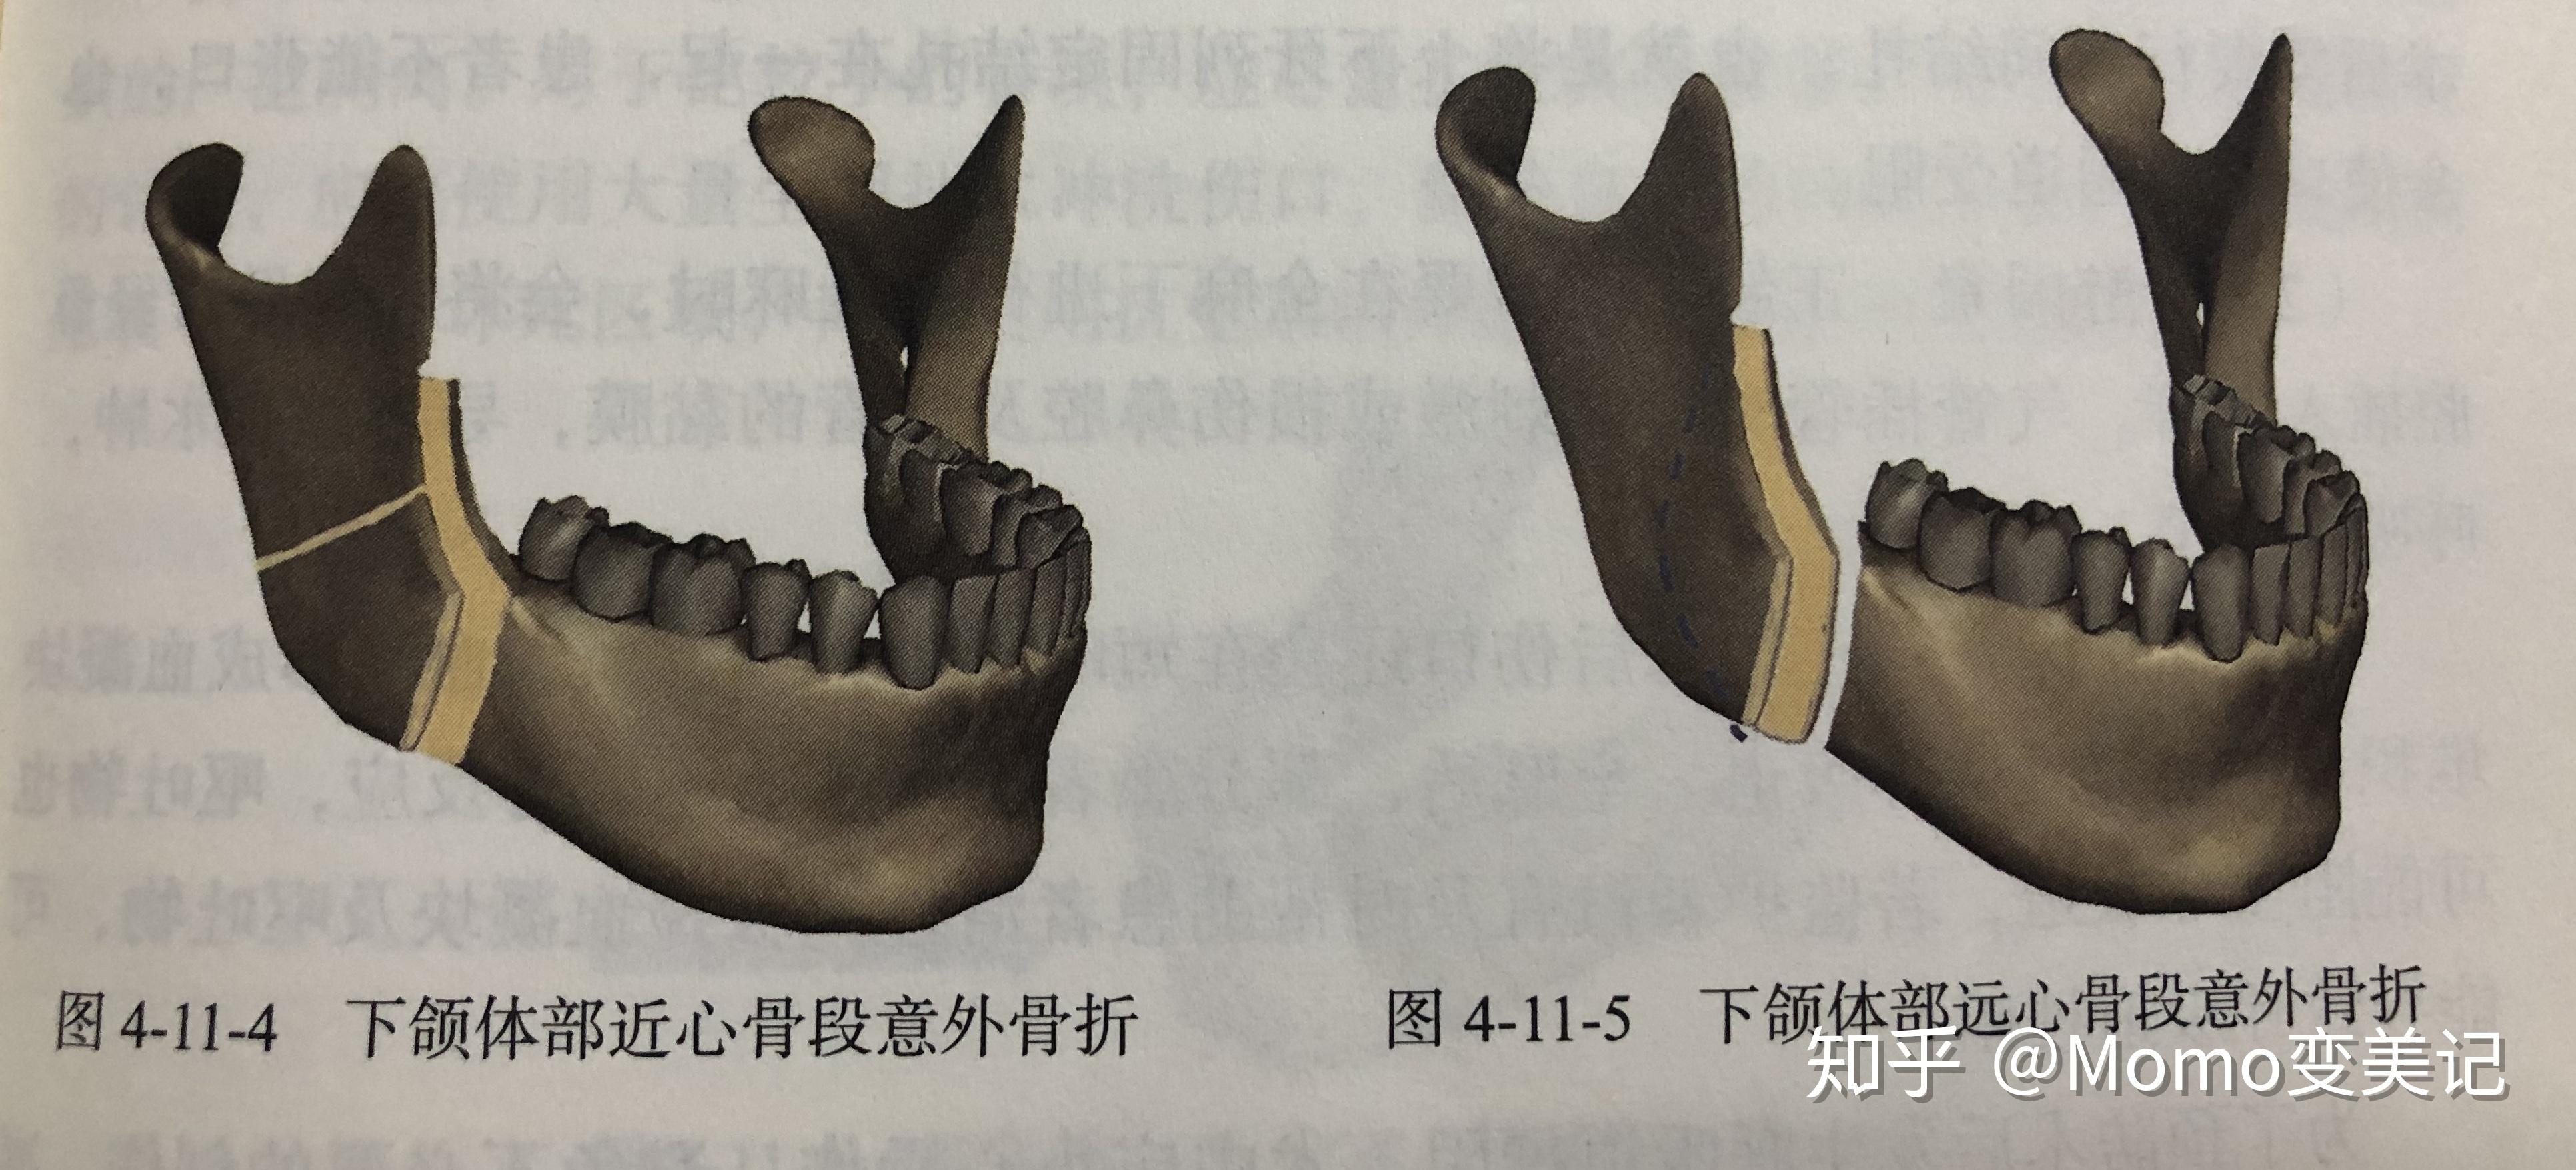 正颌手术的lefort1的上颌前推和顺旋有什么区别？ - 知乎